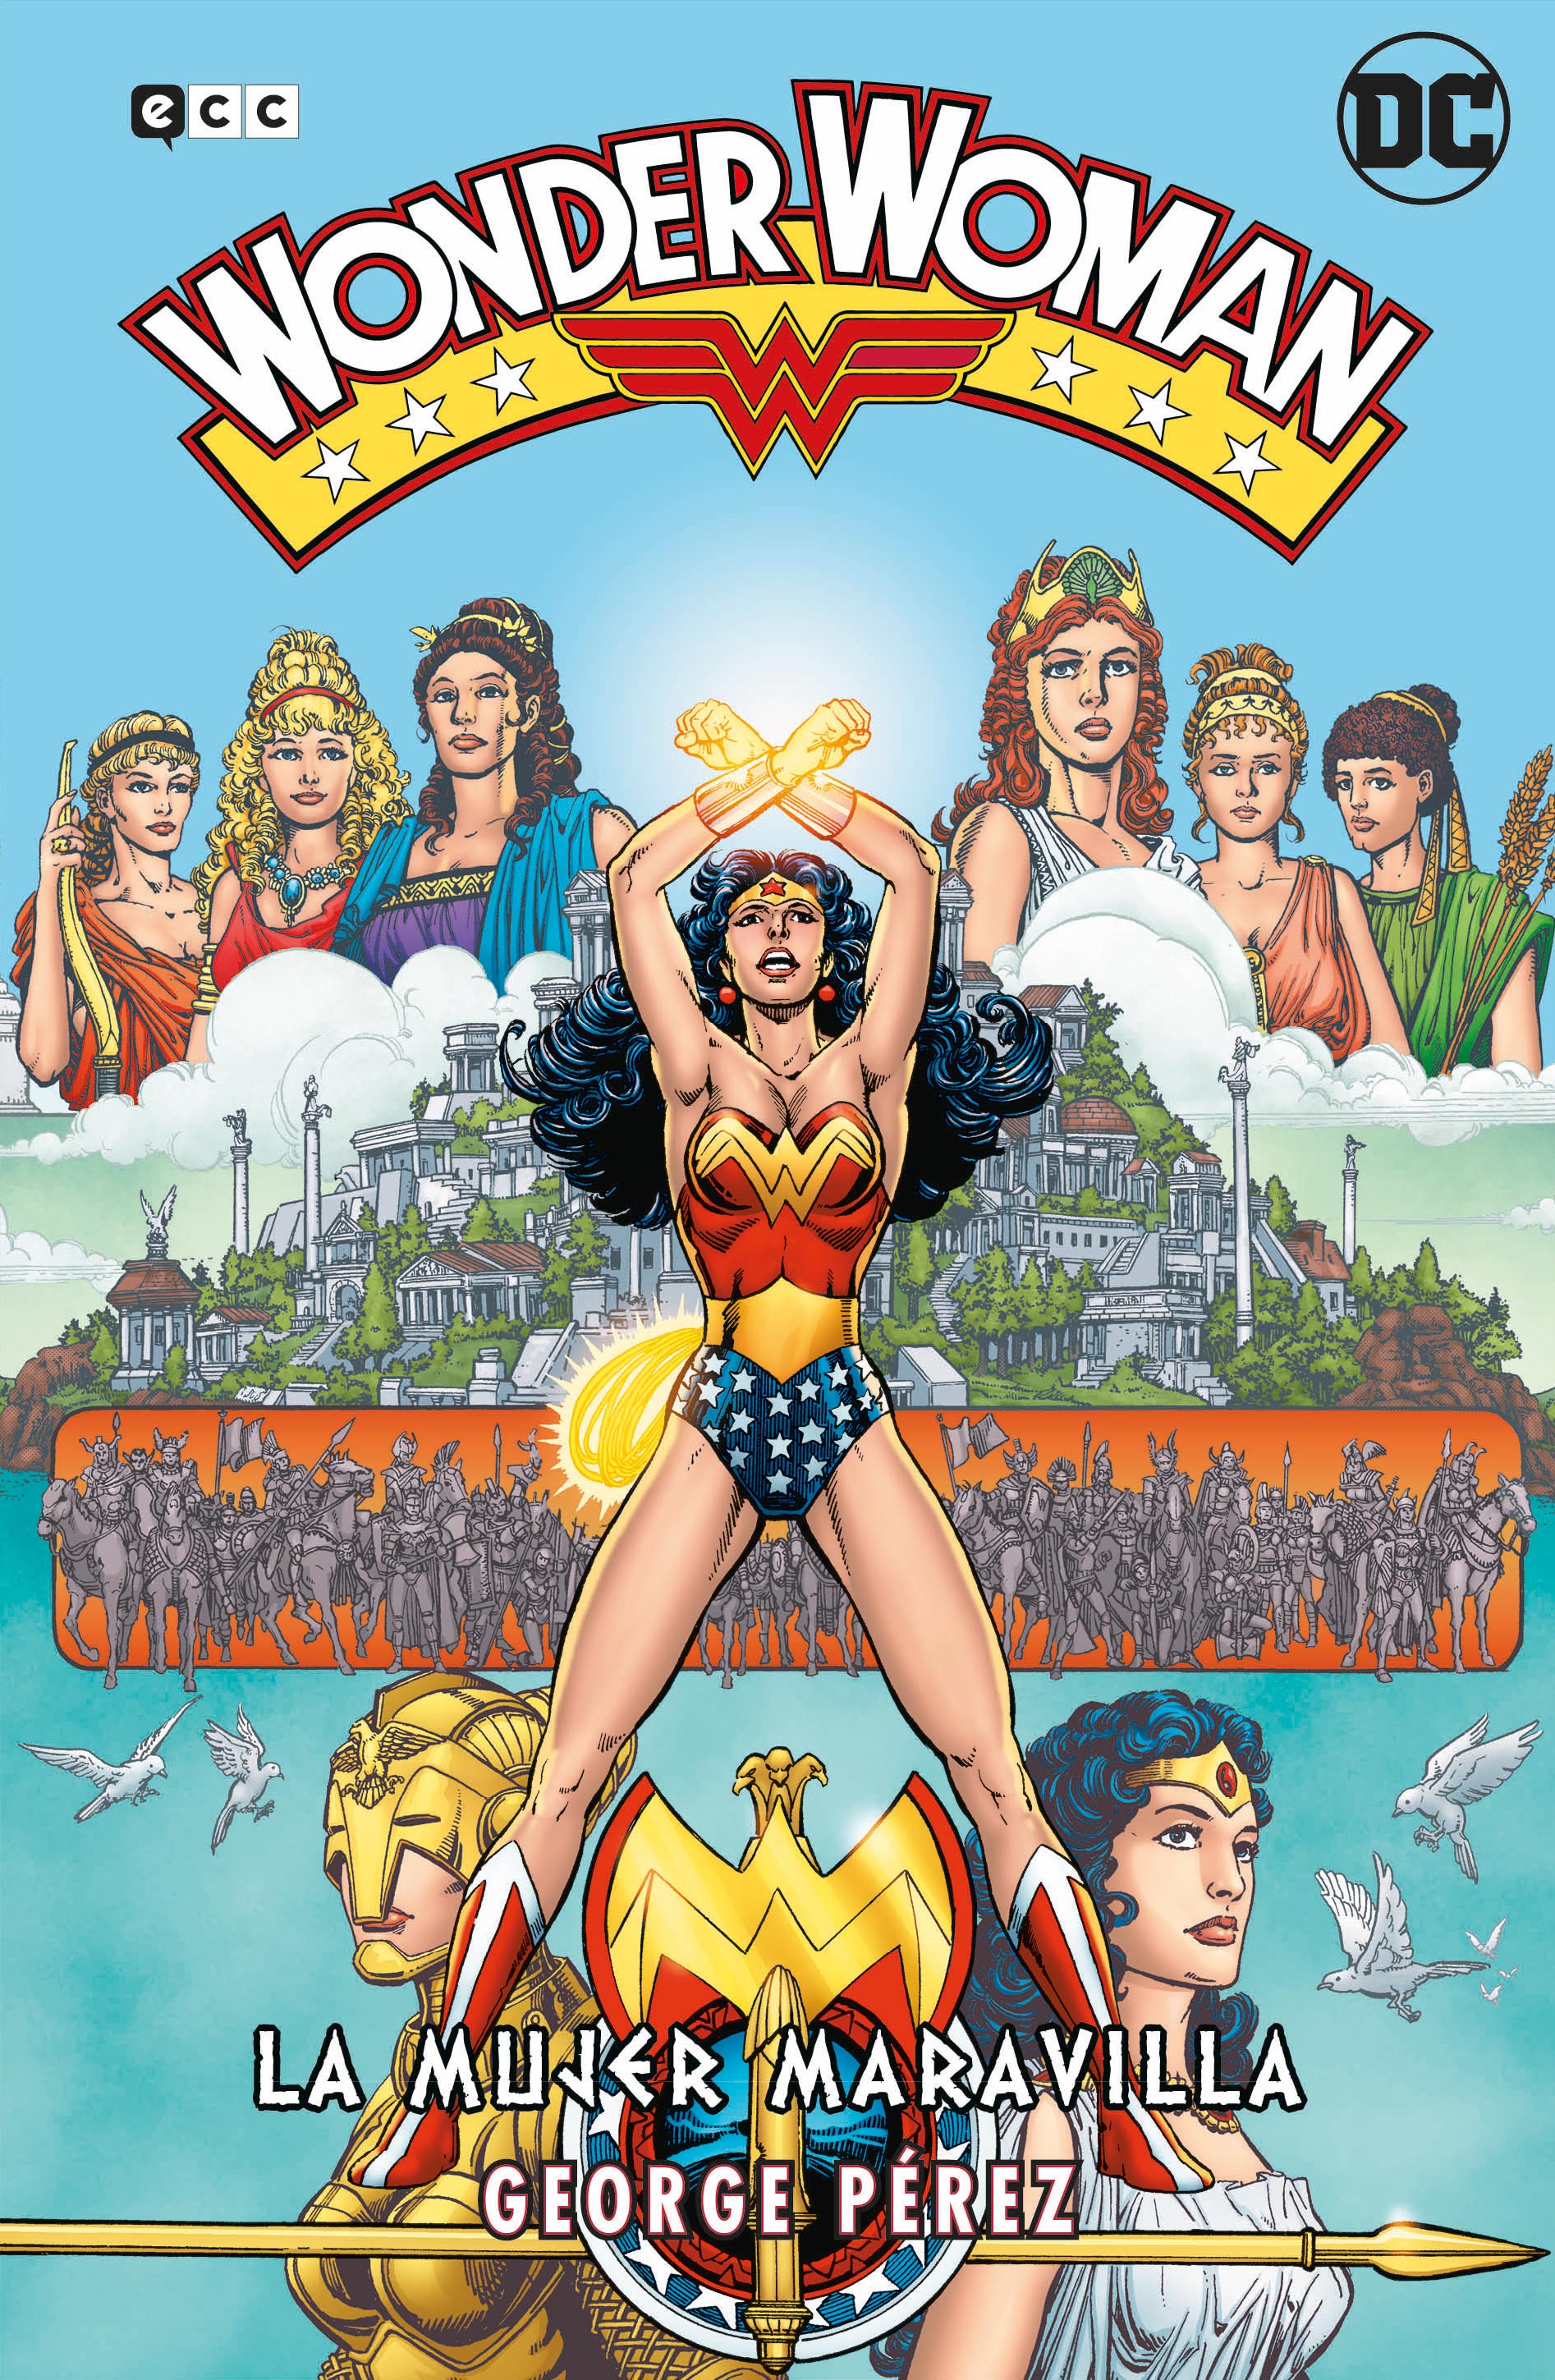 Pino difícil Bermad Wonder Woman de George Pérez: La Mujer Maravilla – La saga completa  (Segunda edición) - ECC Cómics